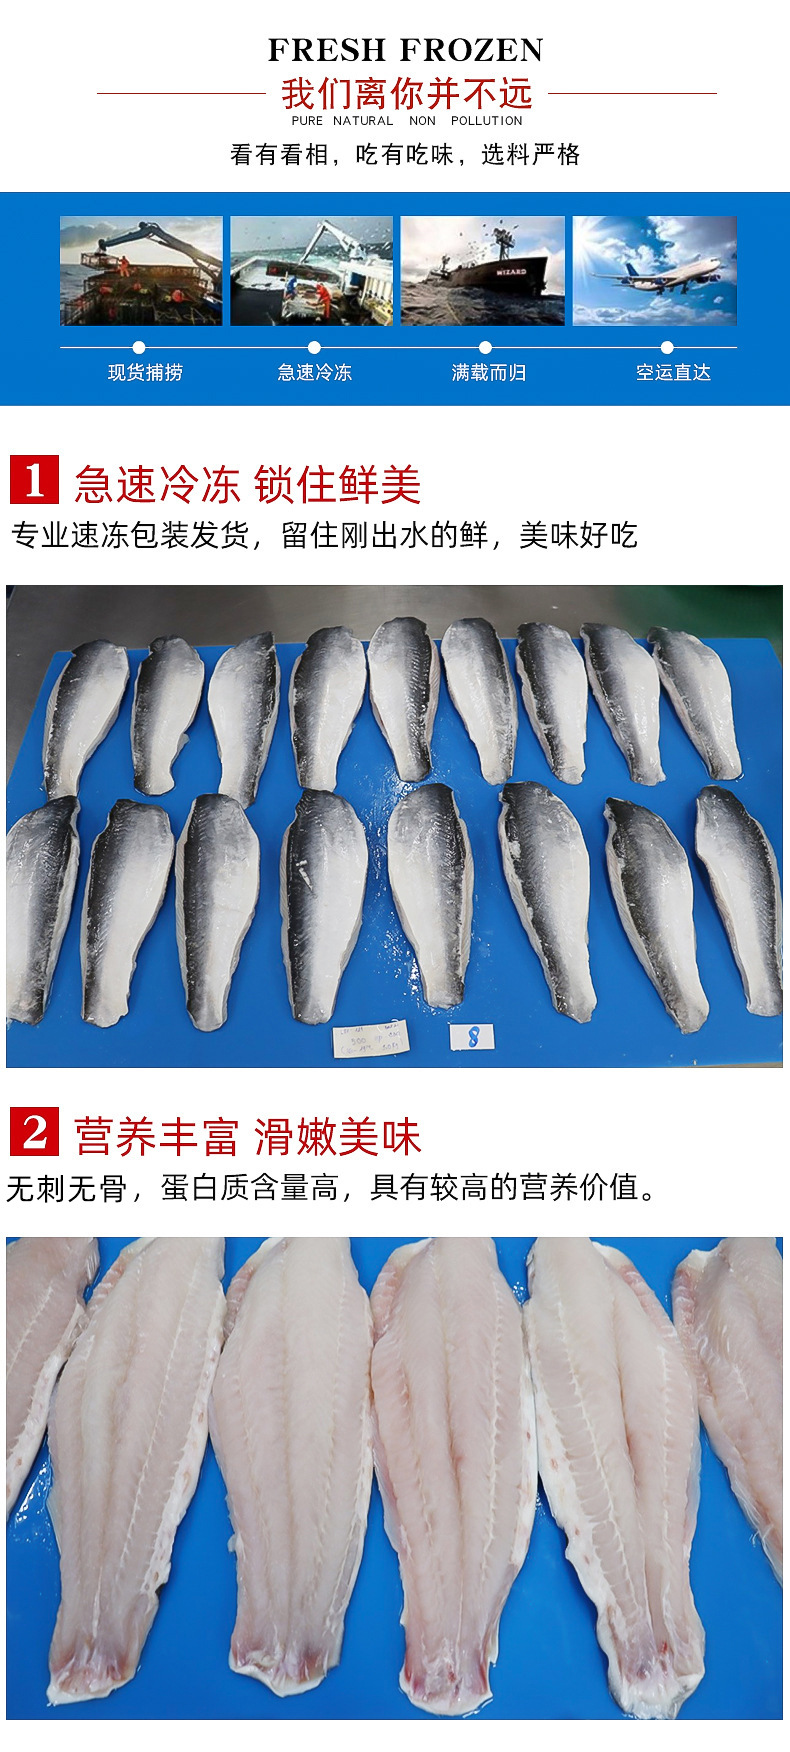 巴沙鱼和龙利鱼的区别,巴沙鱼和龙利鱼的区别图解